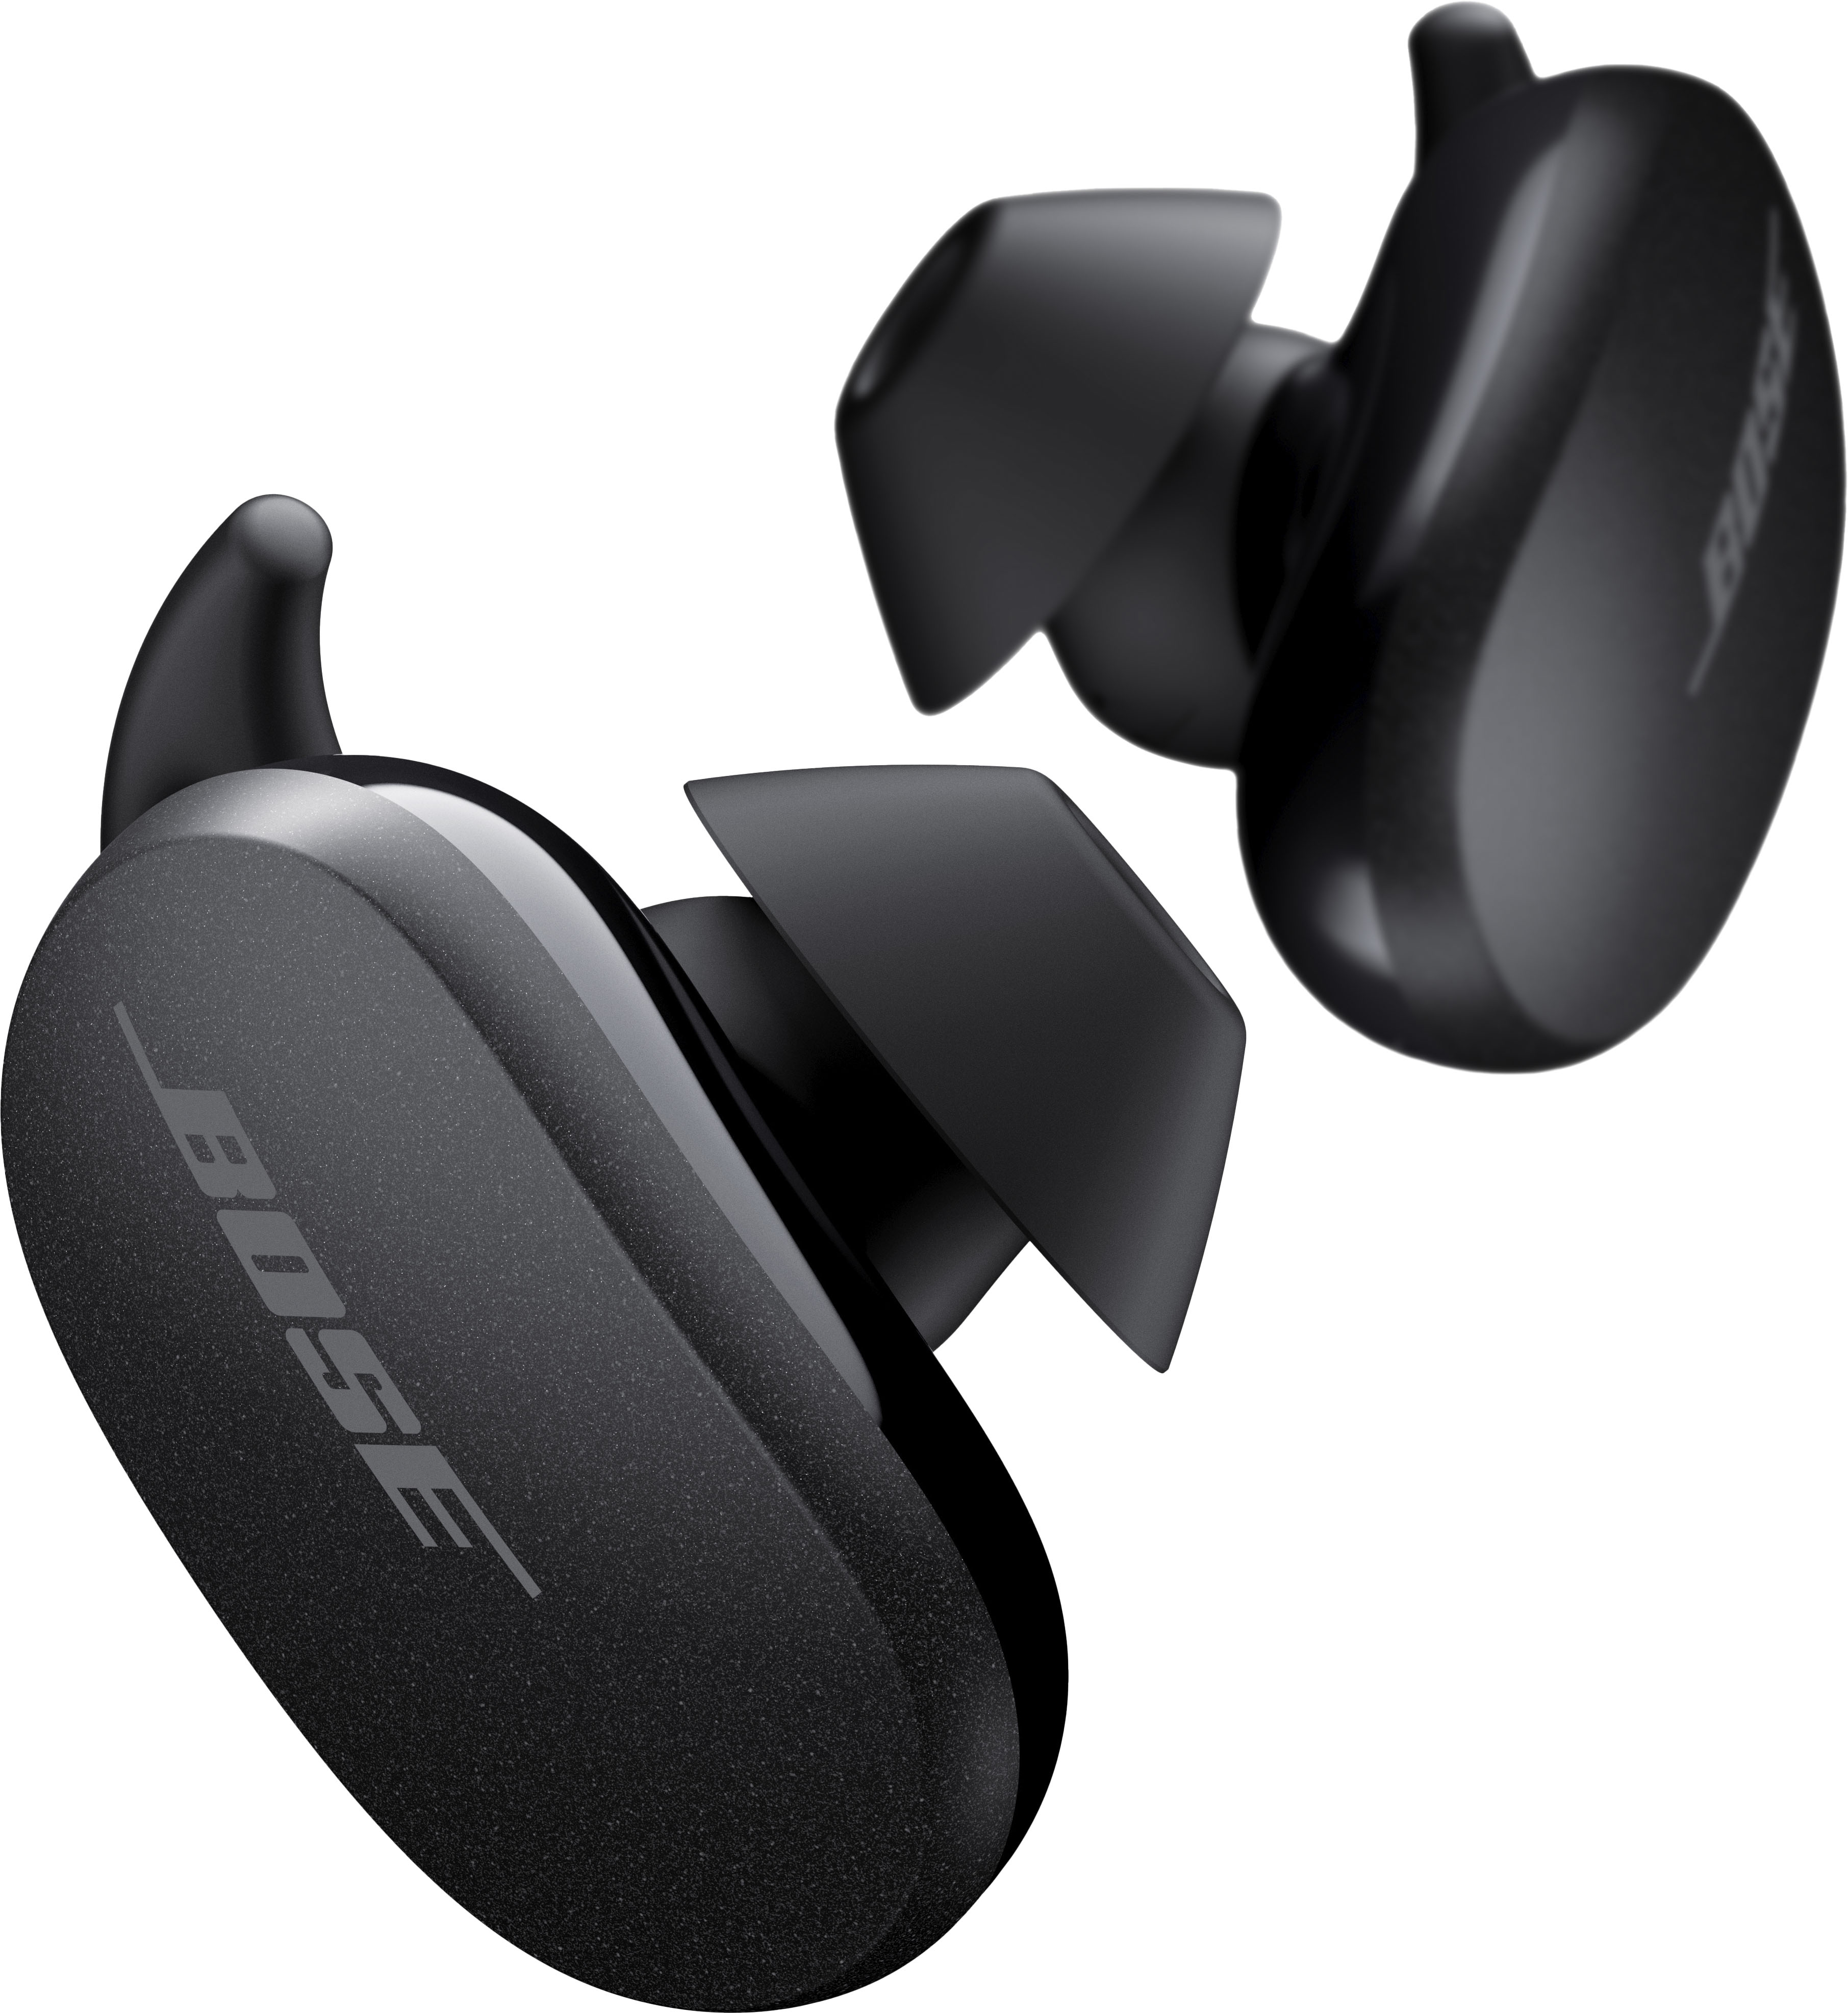 Bose Quietcomfort Earbuds True Wireless Noise Cancelling In Ear Headphones Triple Black 1262 0010 Best Buy